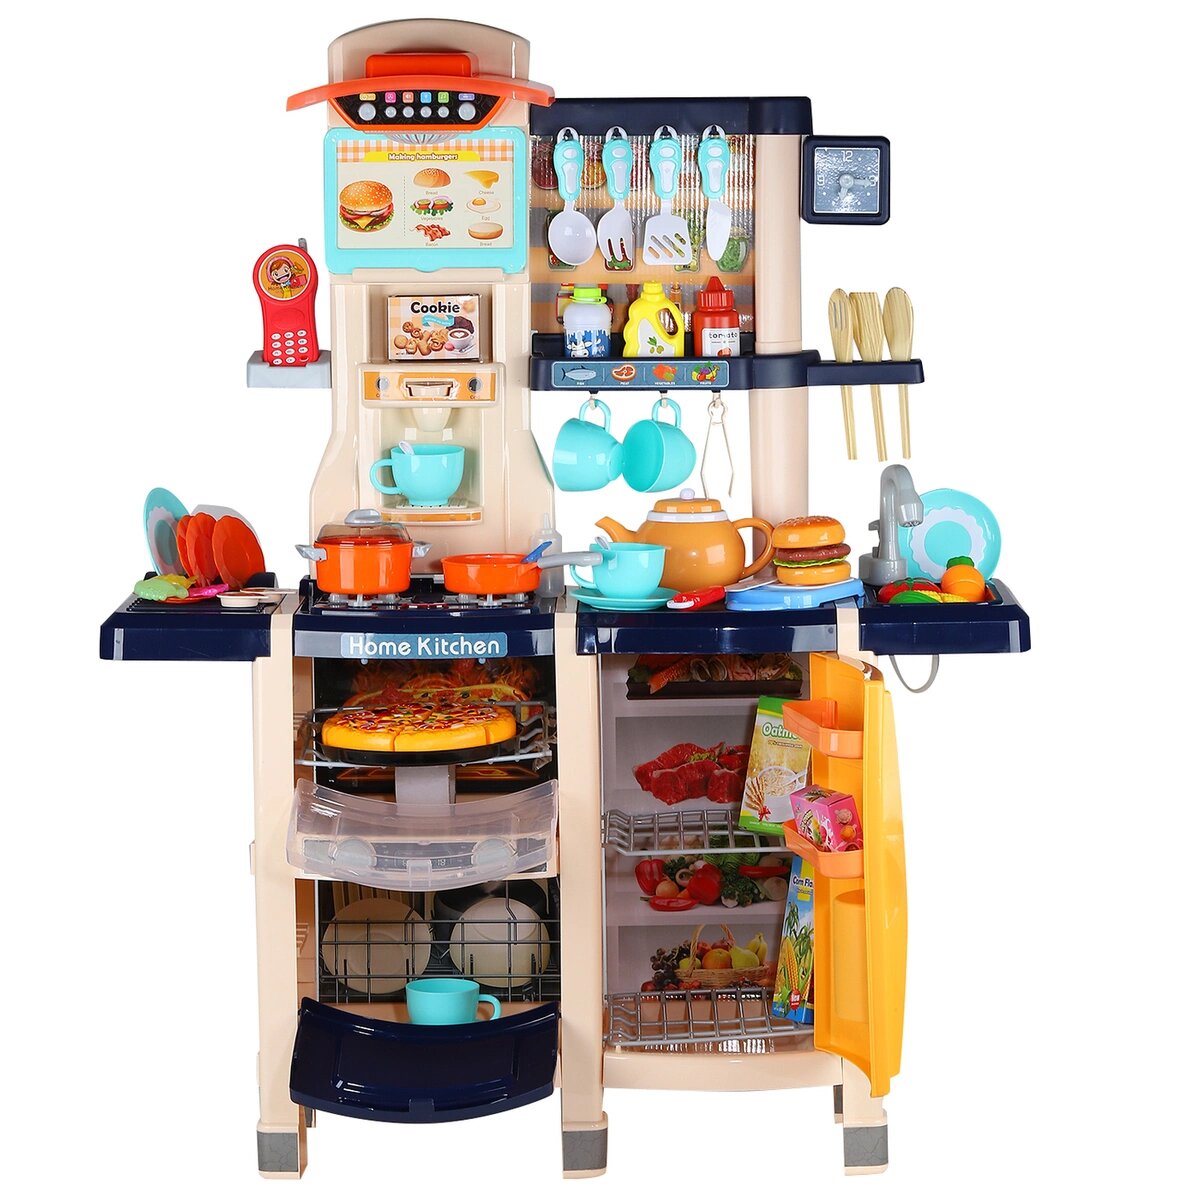 Кухня детская Spraing Mist Kitchen MJL-89 синяя, вода, свет, звук, пар, музыка, 65 предметов